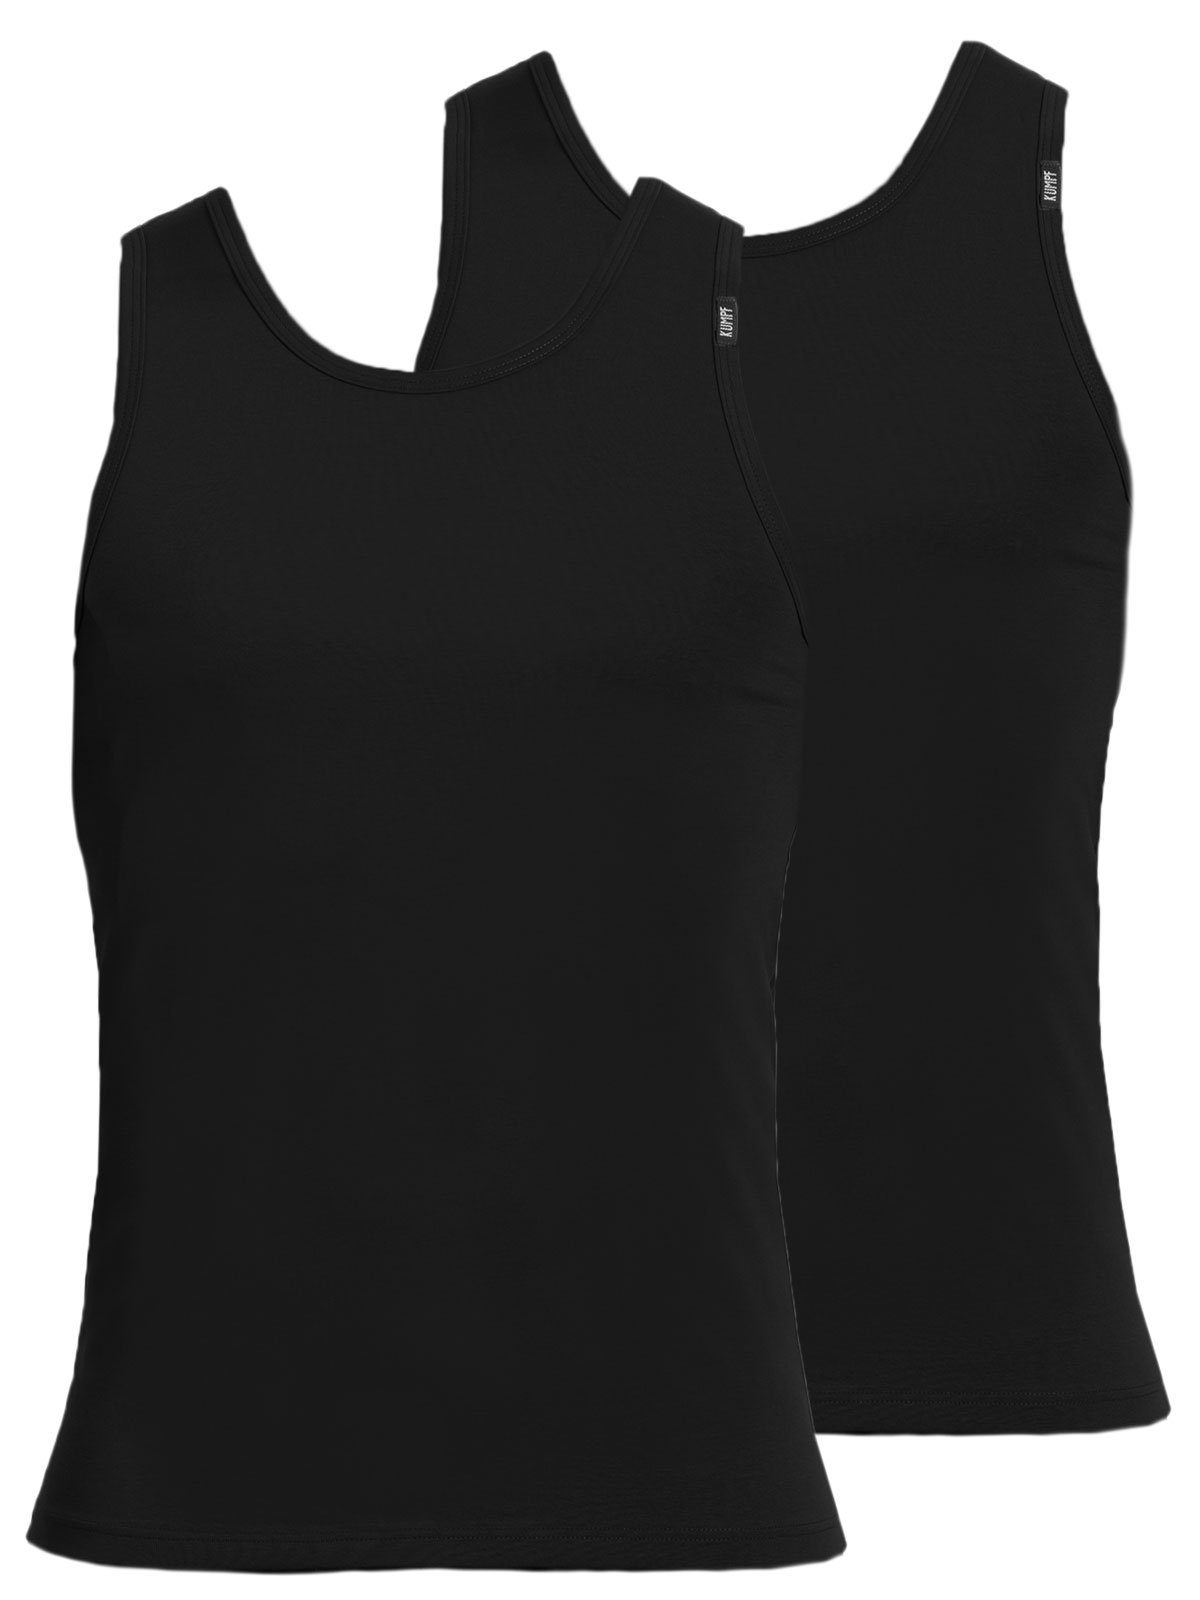 KUMPF Achselhemd 2-St) Cotton (Spar-Set, Herren Unterhemd Sparpack Markenqualität schwarz Bio hohe 2er